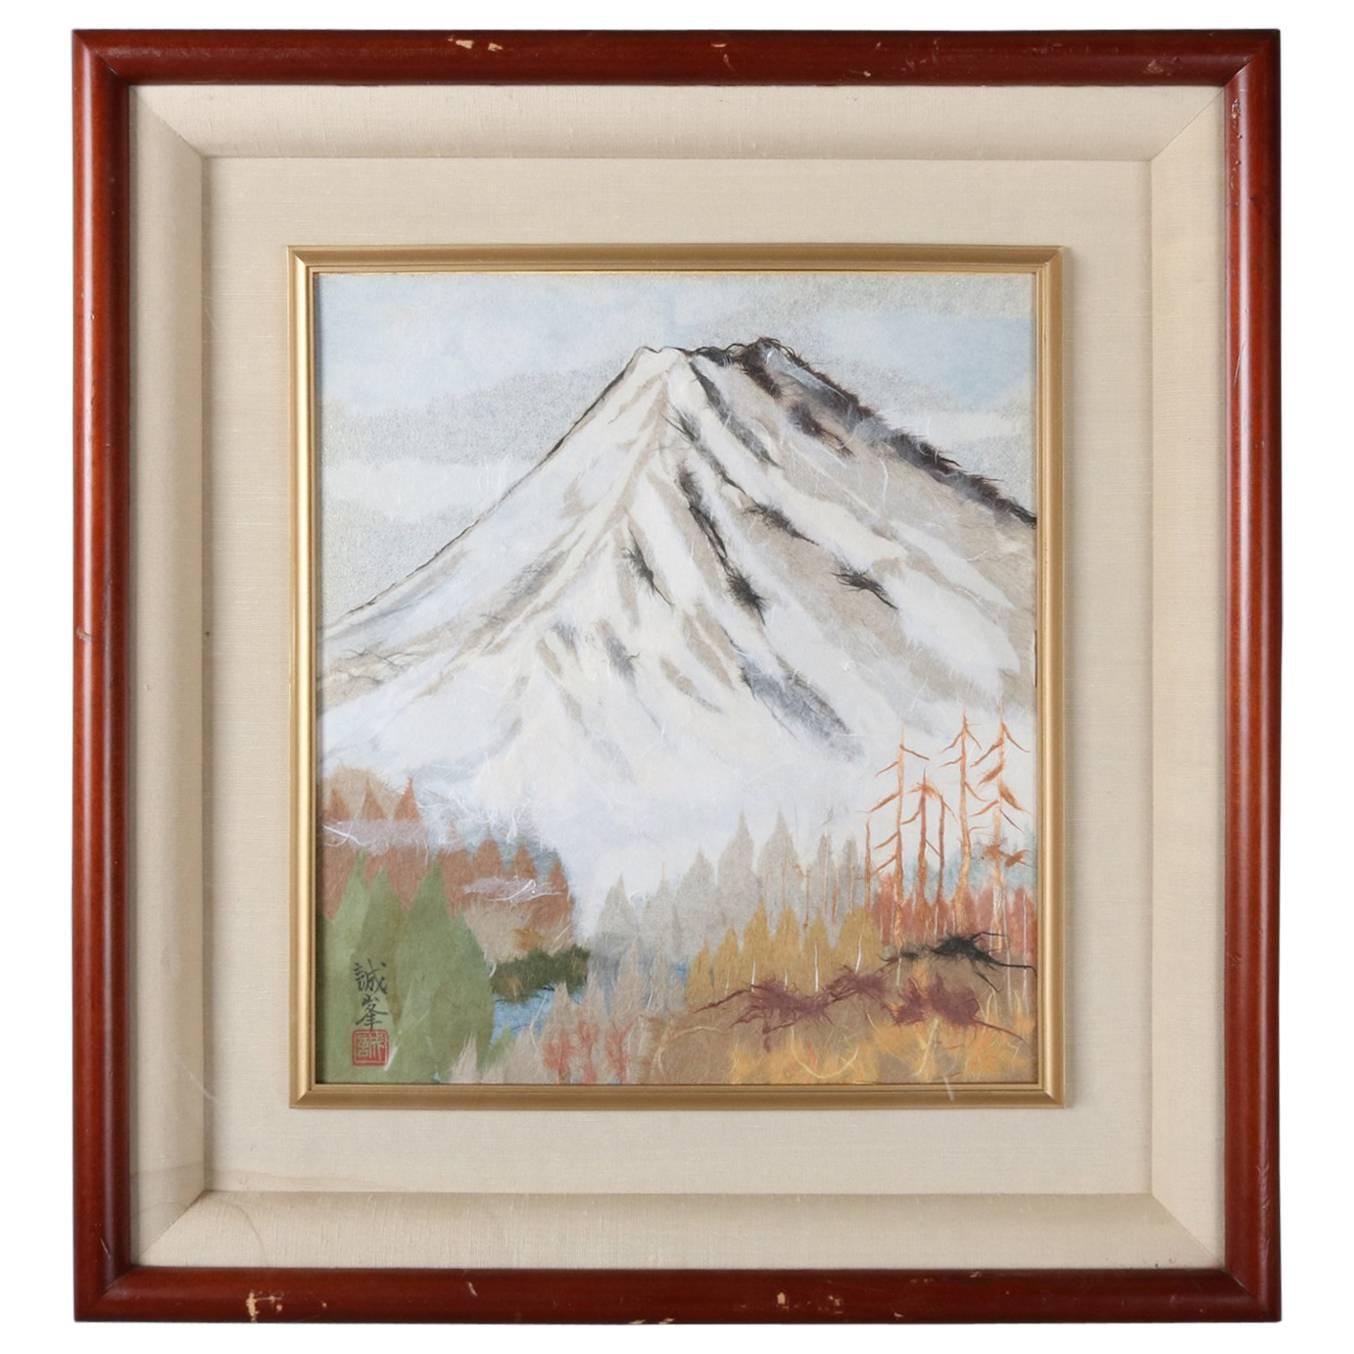 Japanese Chigirie Work of Mt. Fuji by Master Seino Kozaki, 20th Century